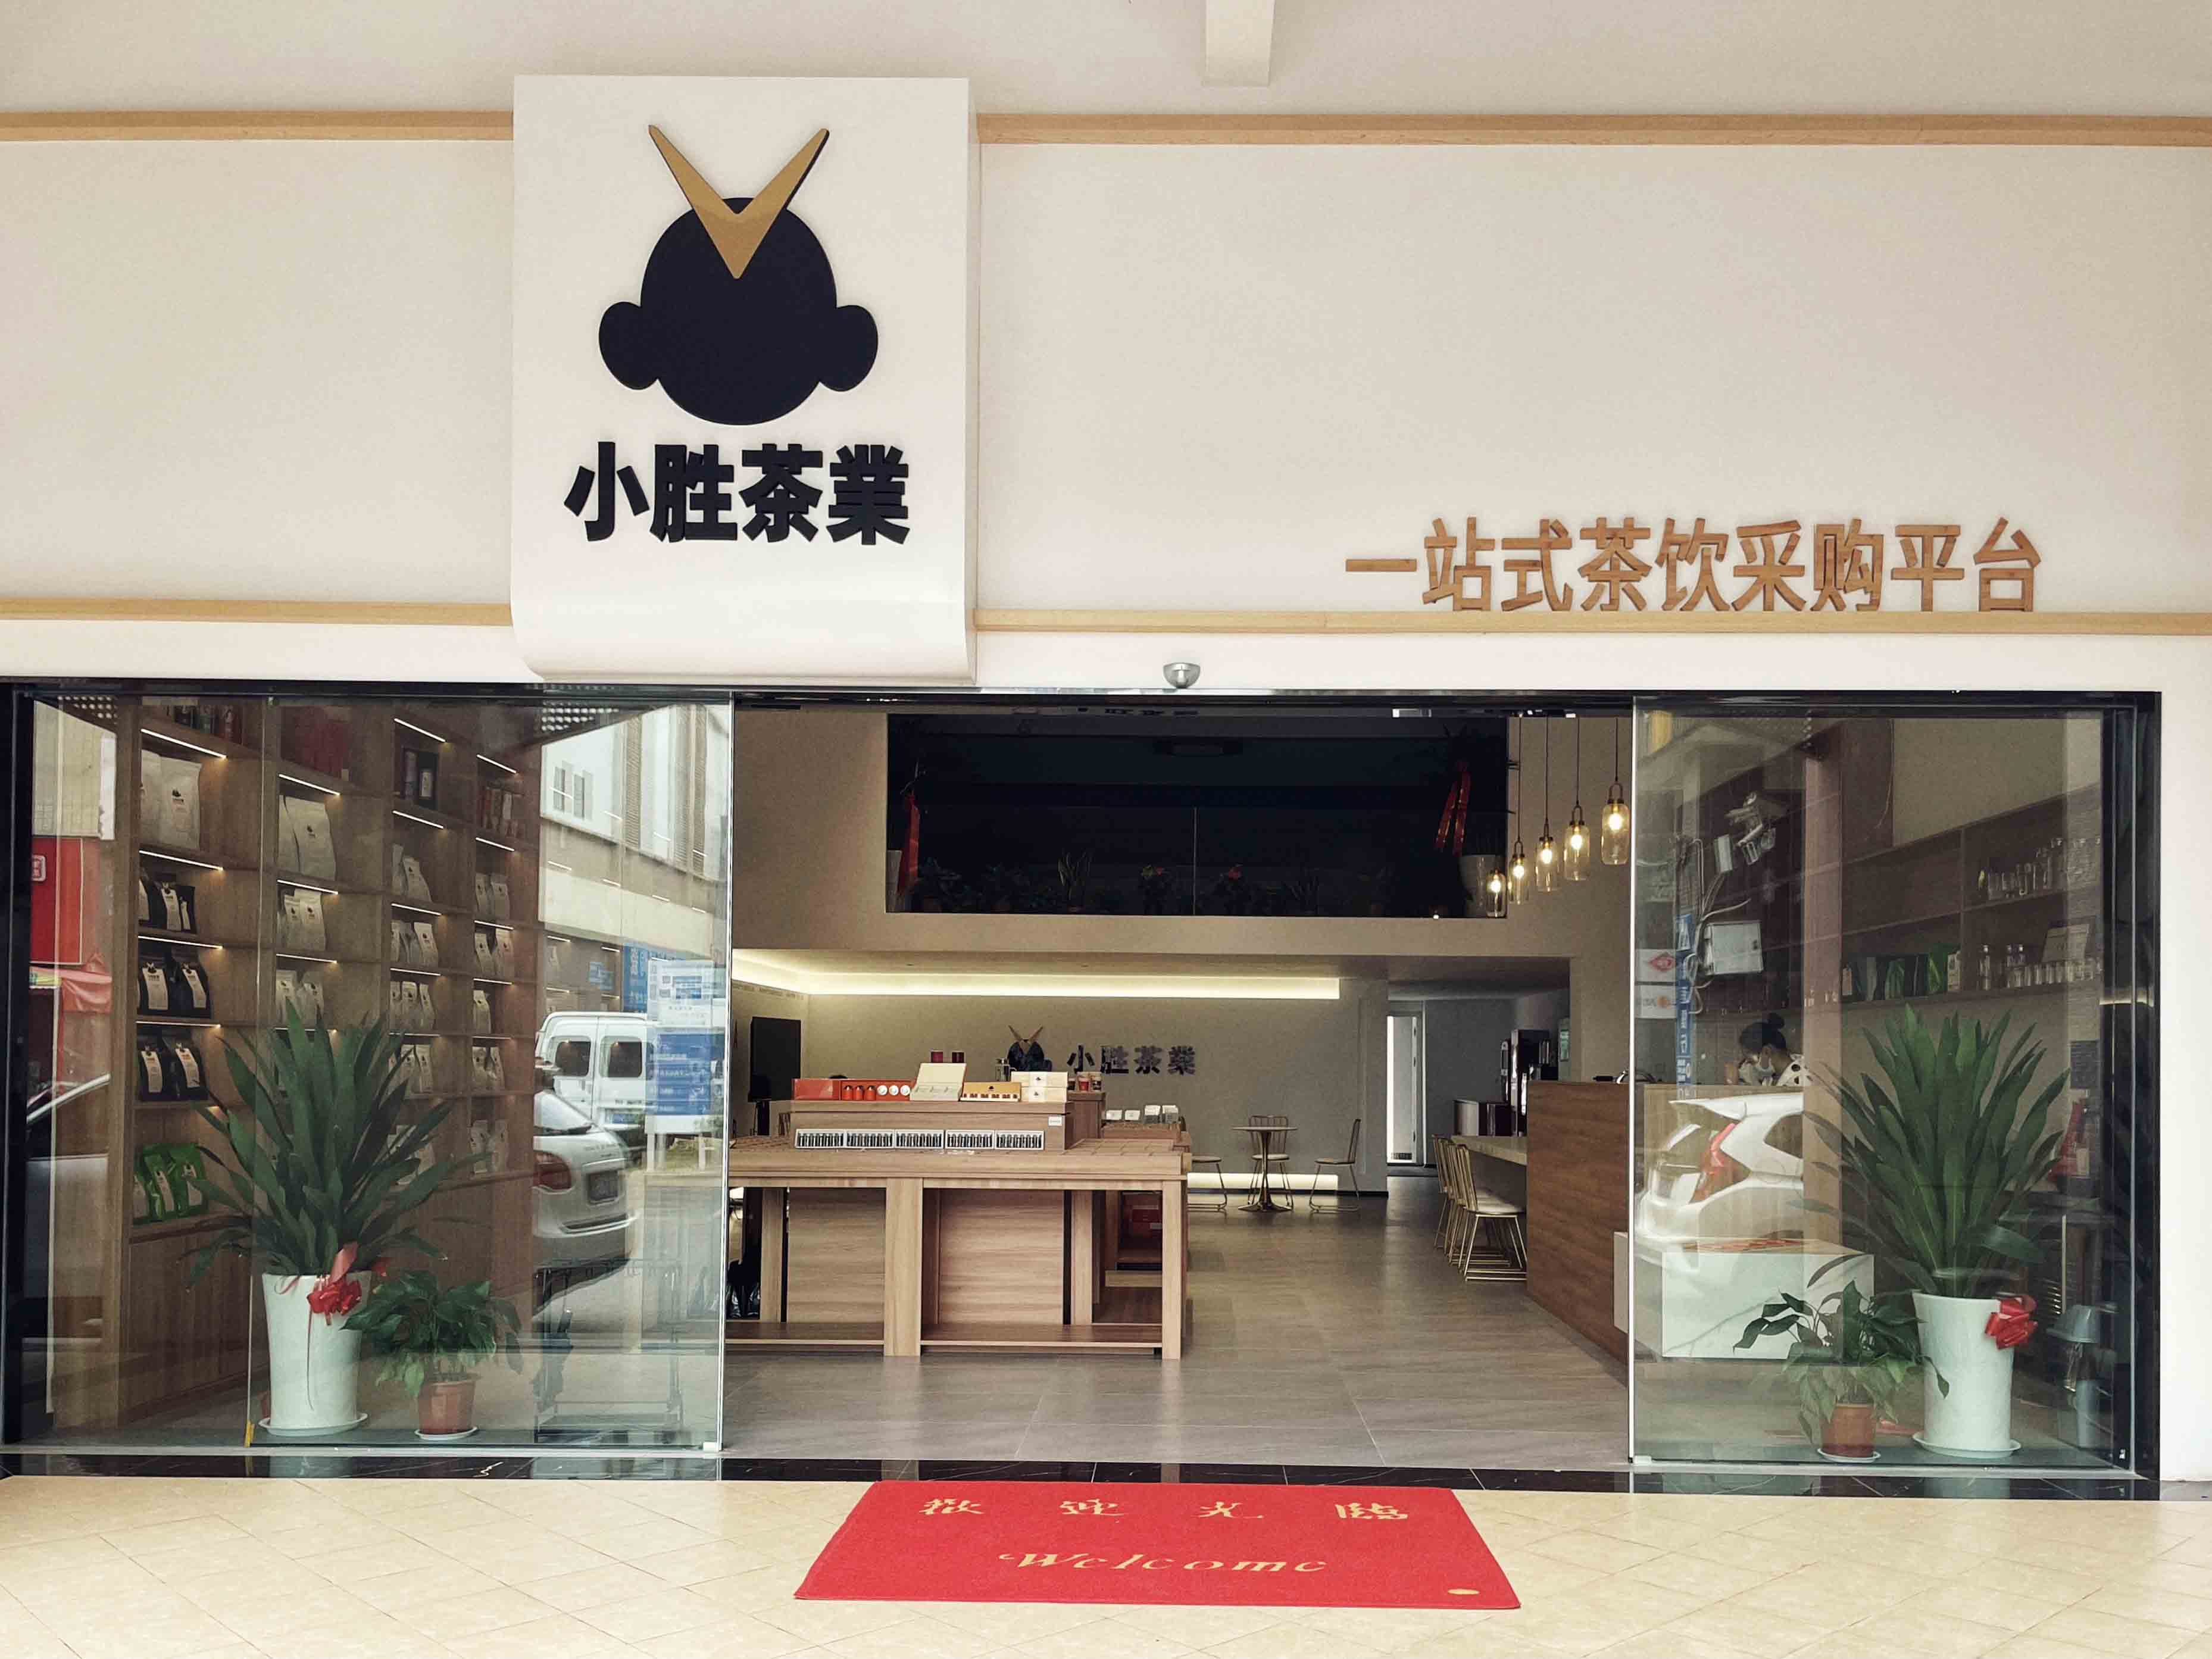 小胜茶業：一站式茶饮服务供应商，掀起“餐+茶”升级体验新风暴！